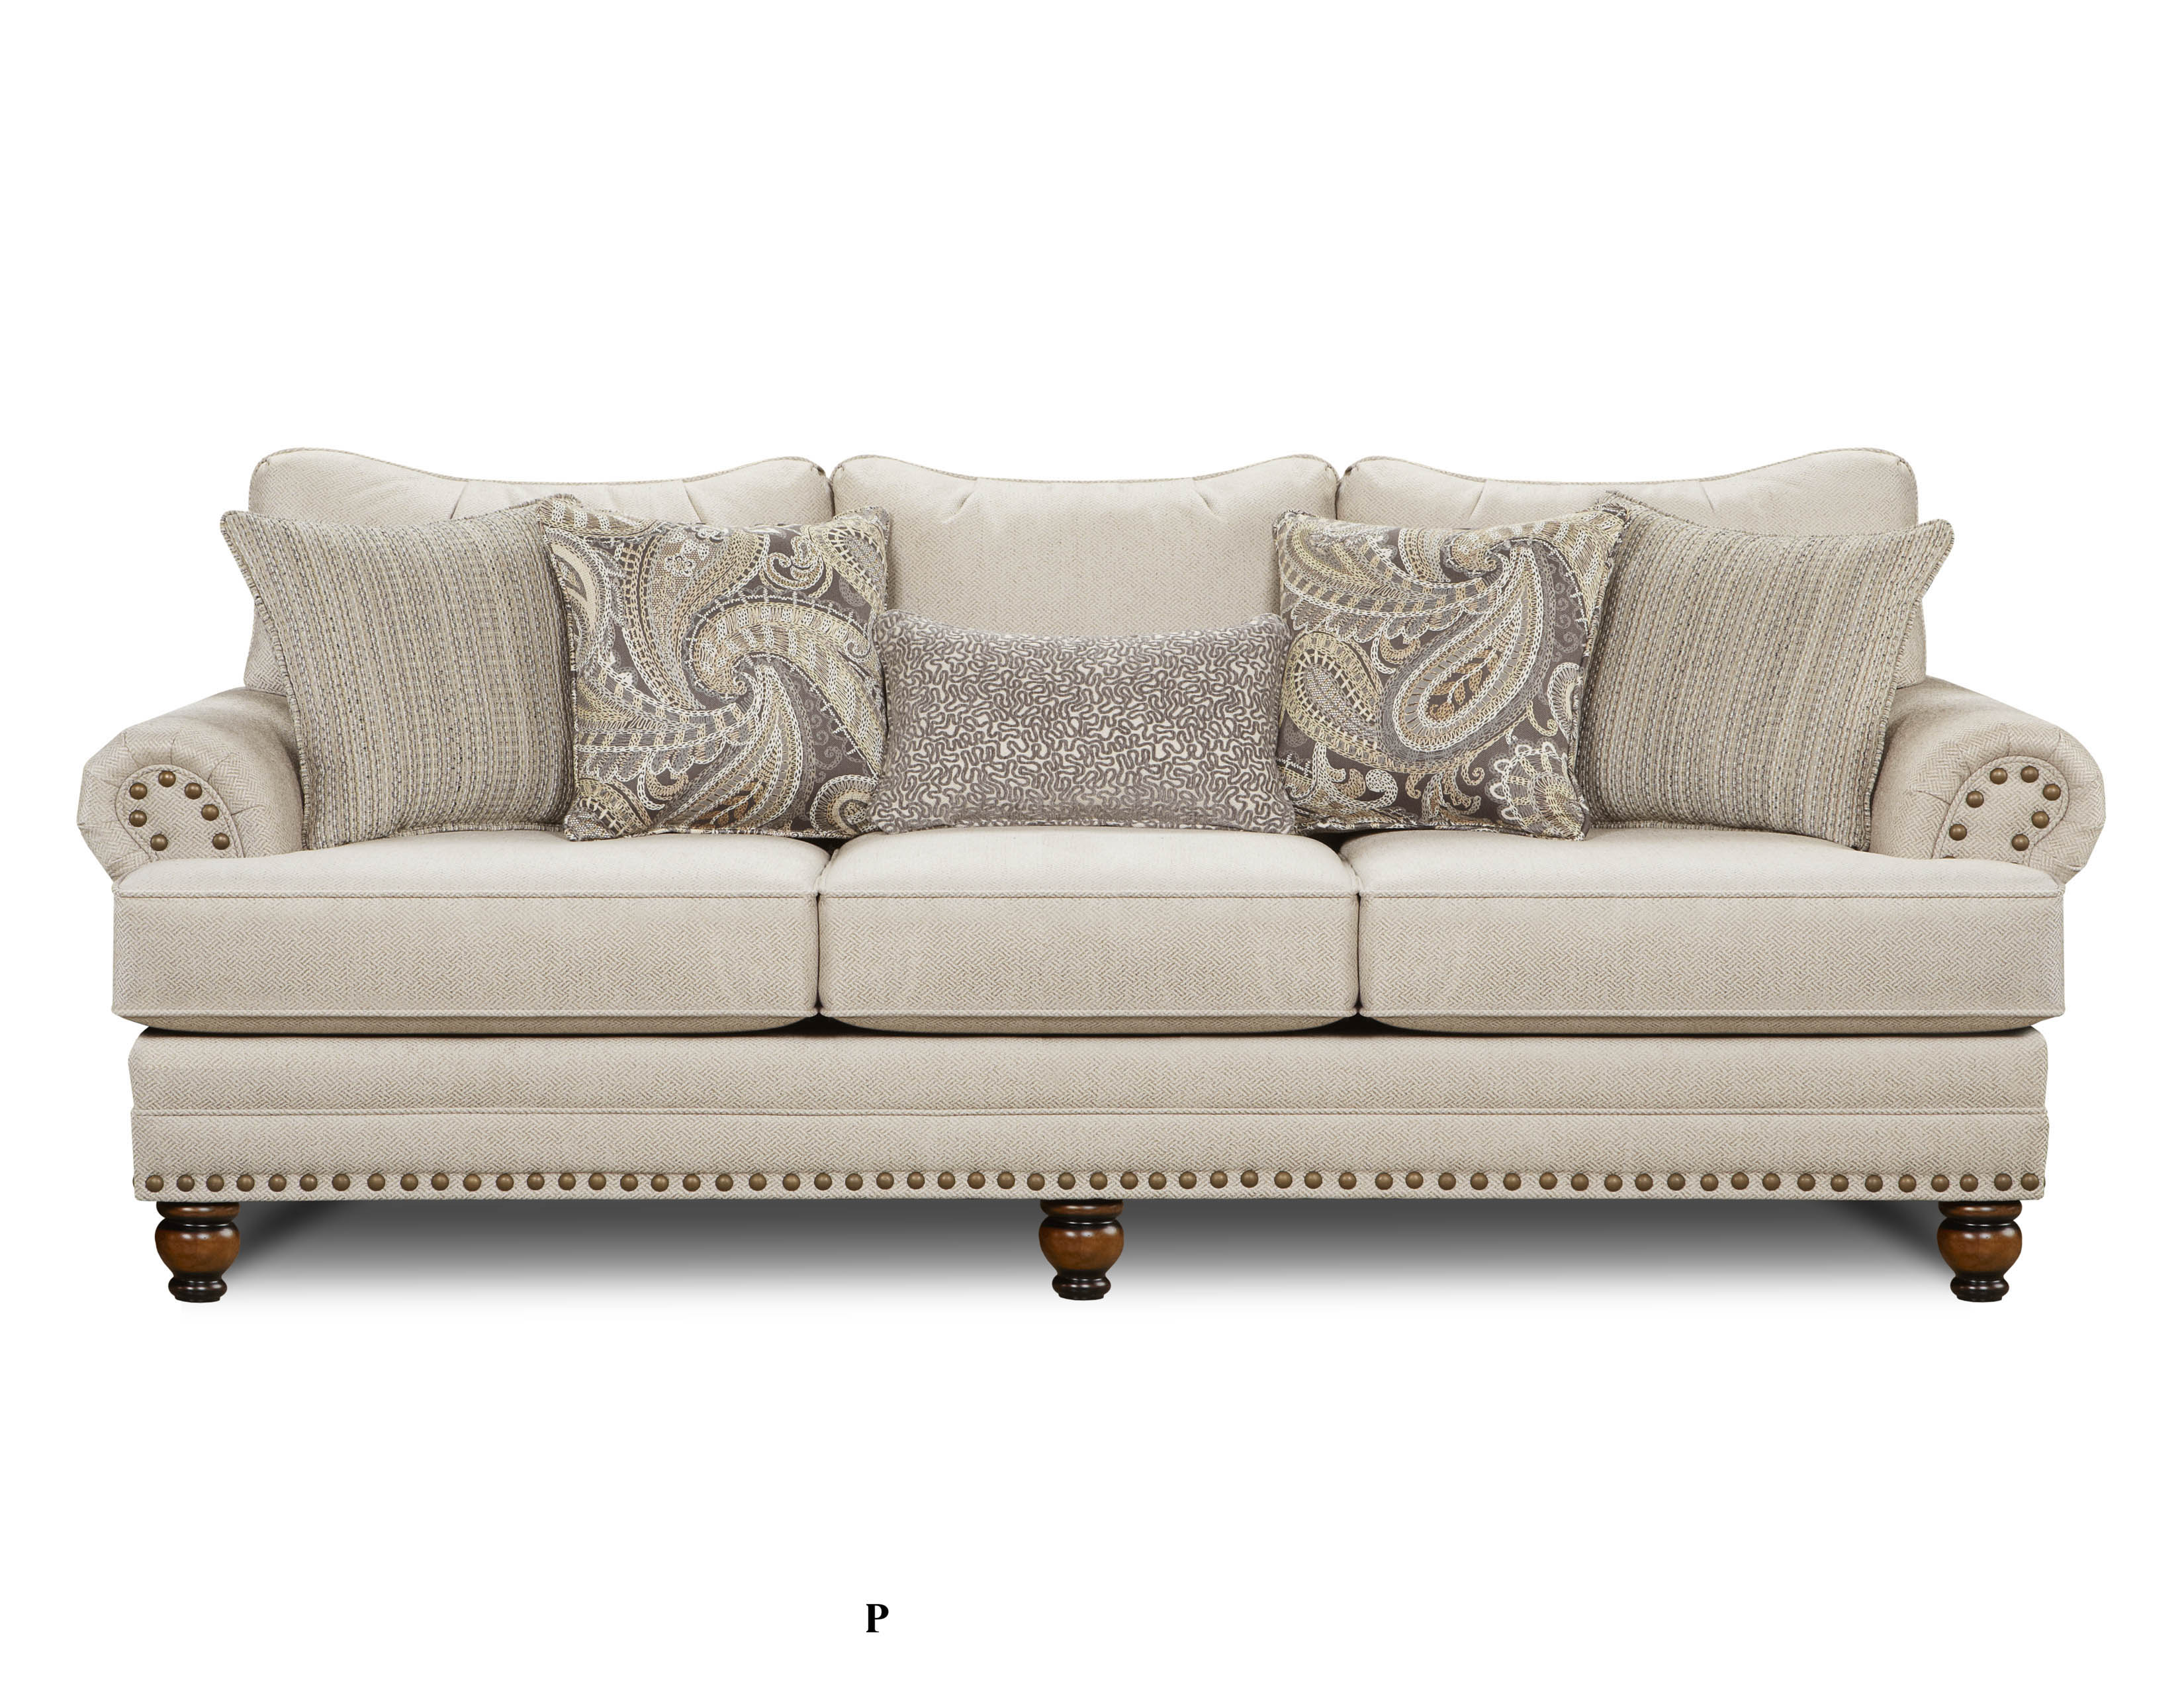 Carys Doe Fusion Furniture sofa